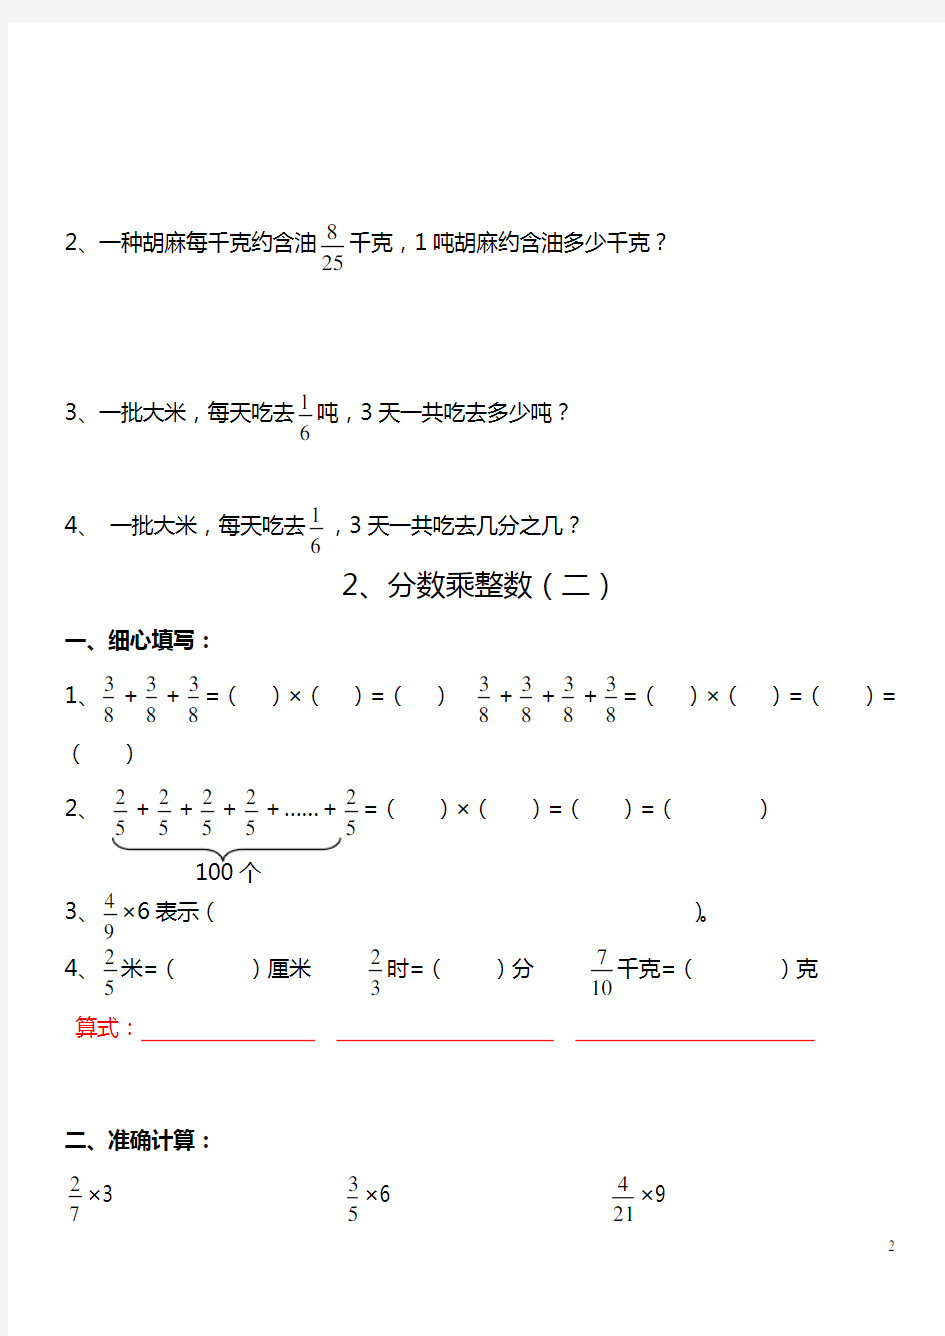 分数乘法练习题全套(整理打印版)